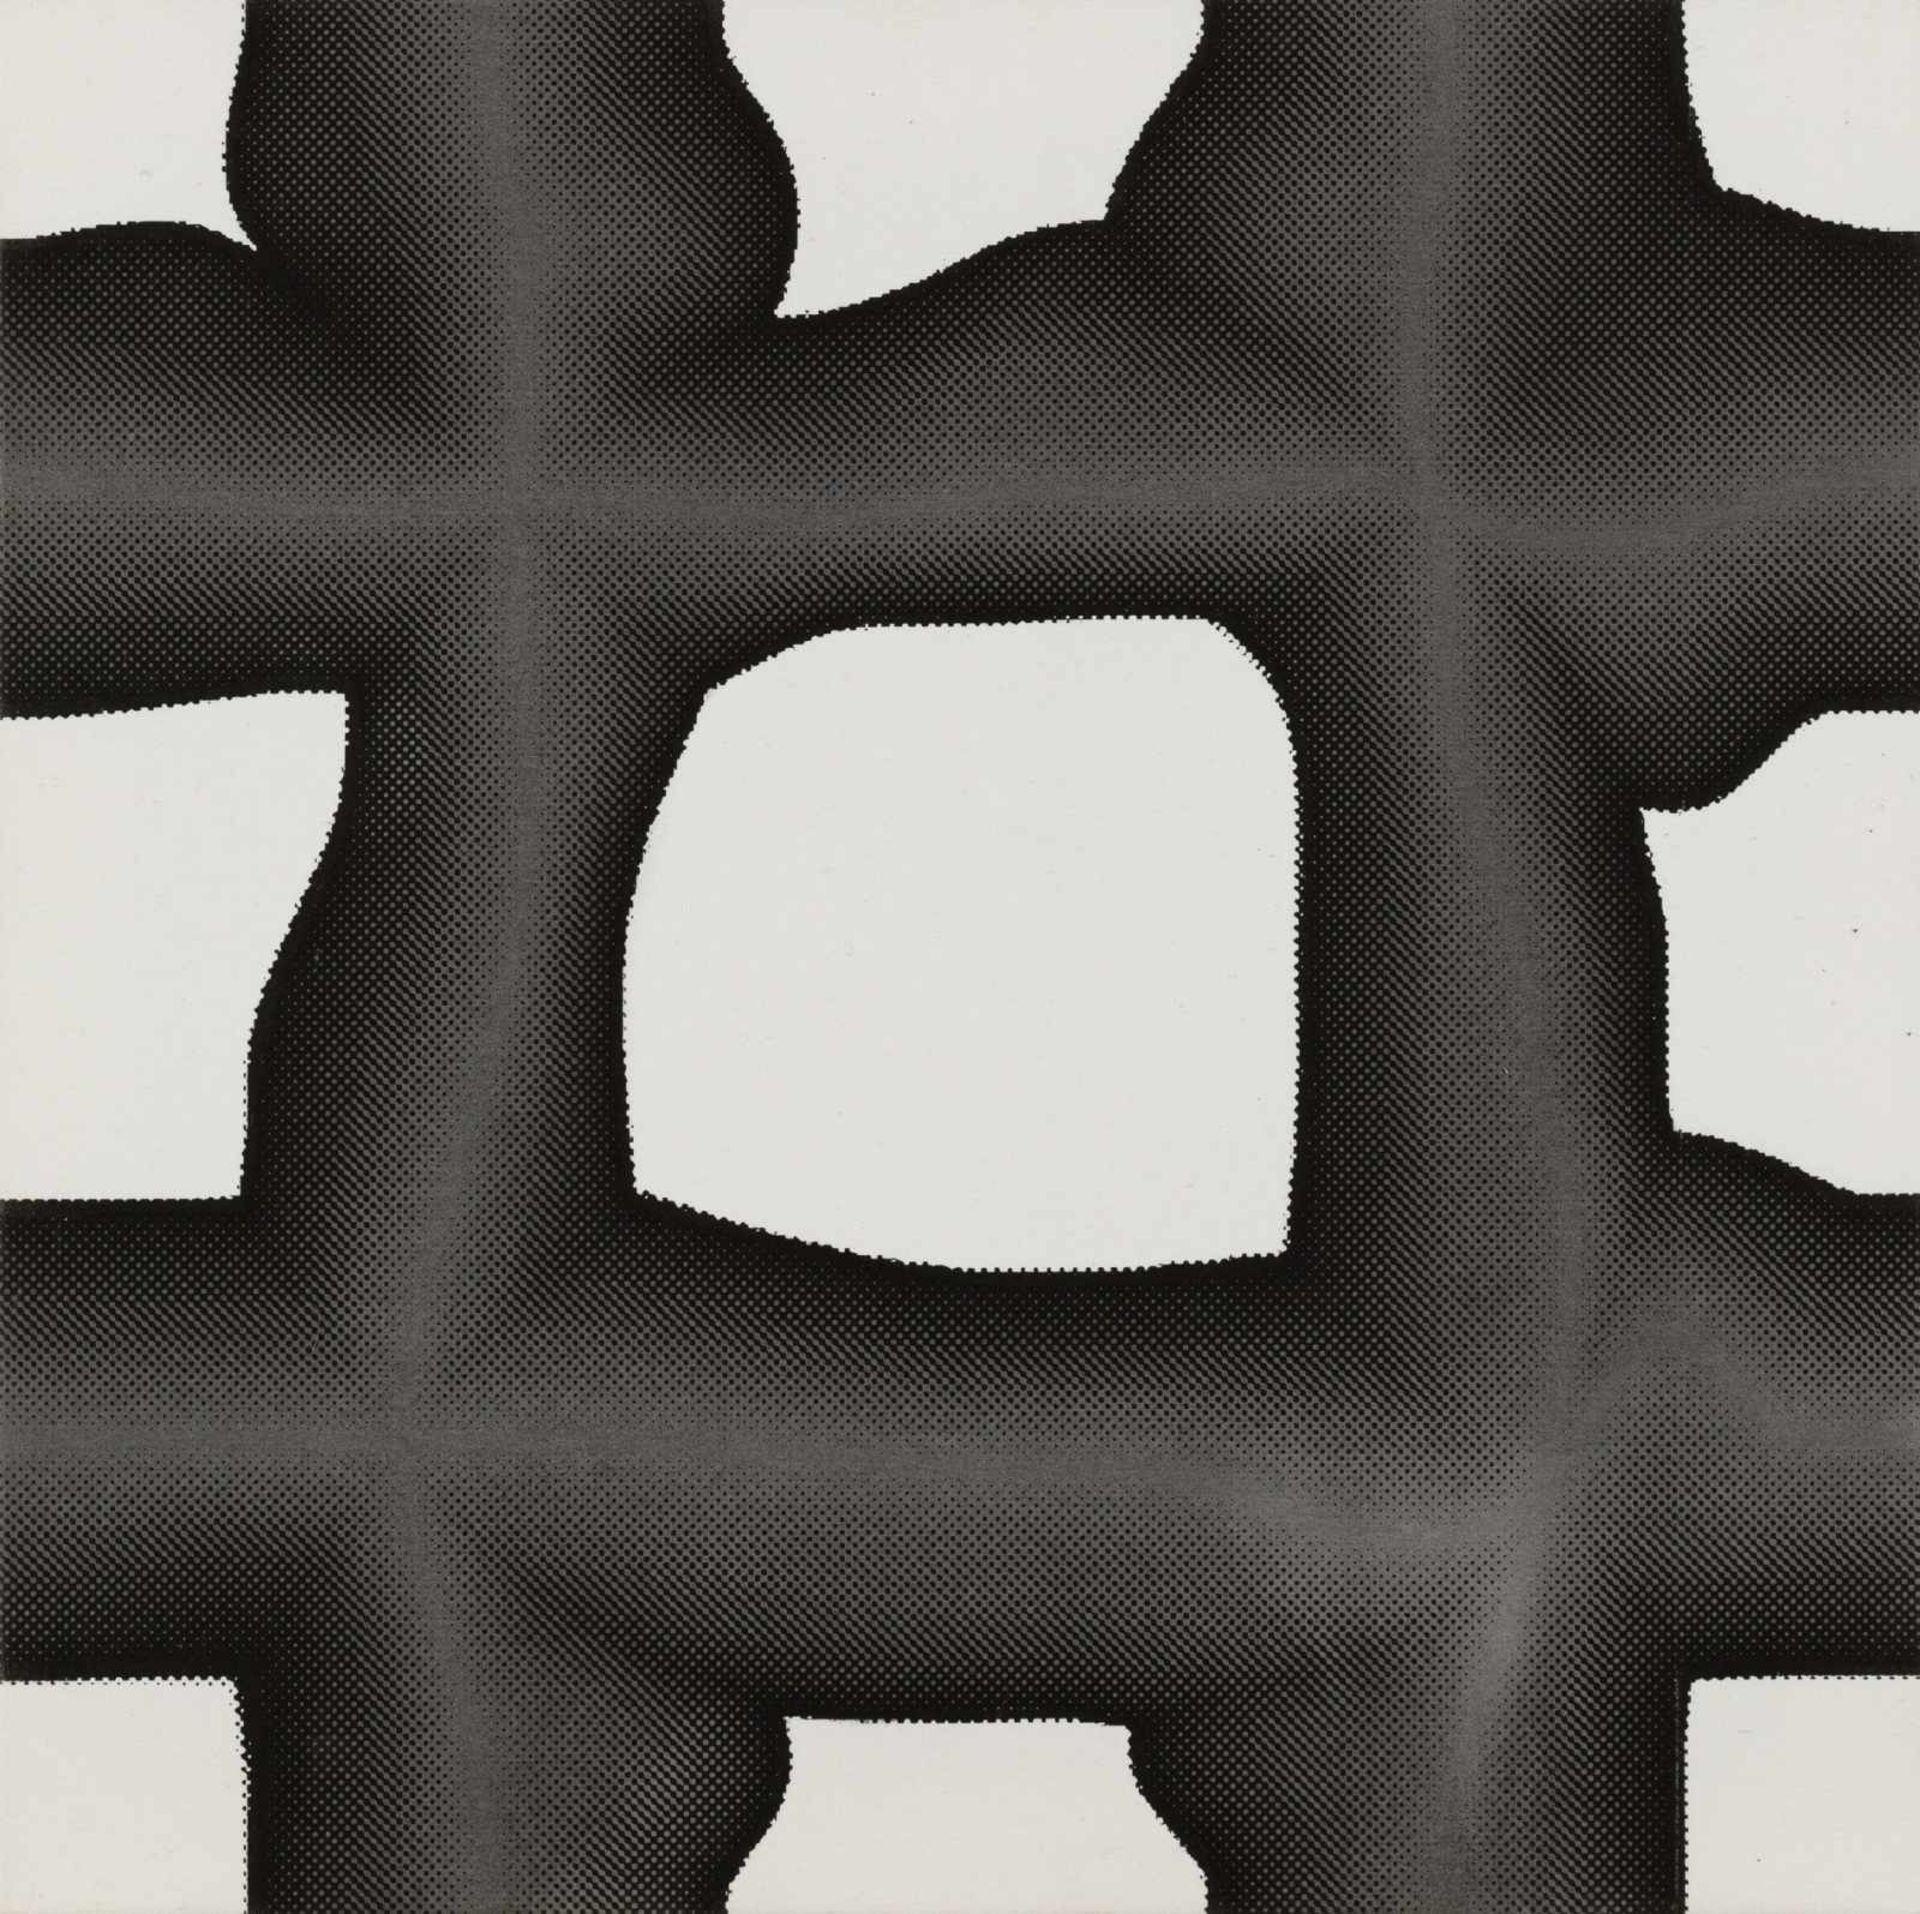 Peter Kogler Innsbruck 1959 geb. Ohne Titel Siebdruck, Acryl auf Leinwand 60 x 60 cm 1997 rückseitig